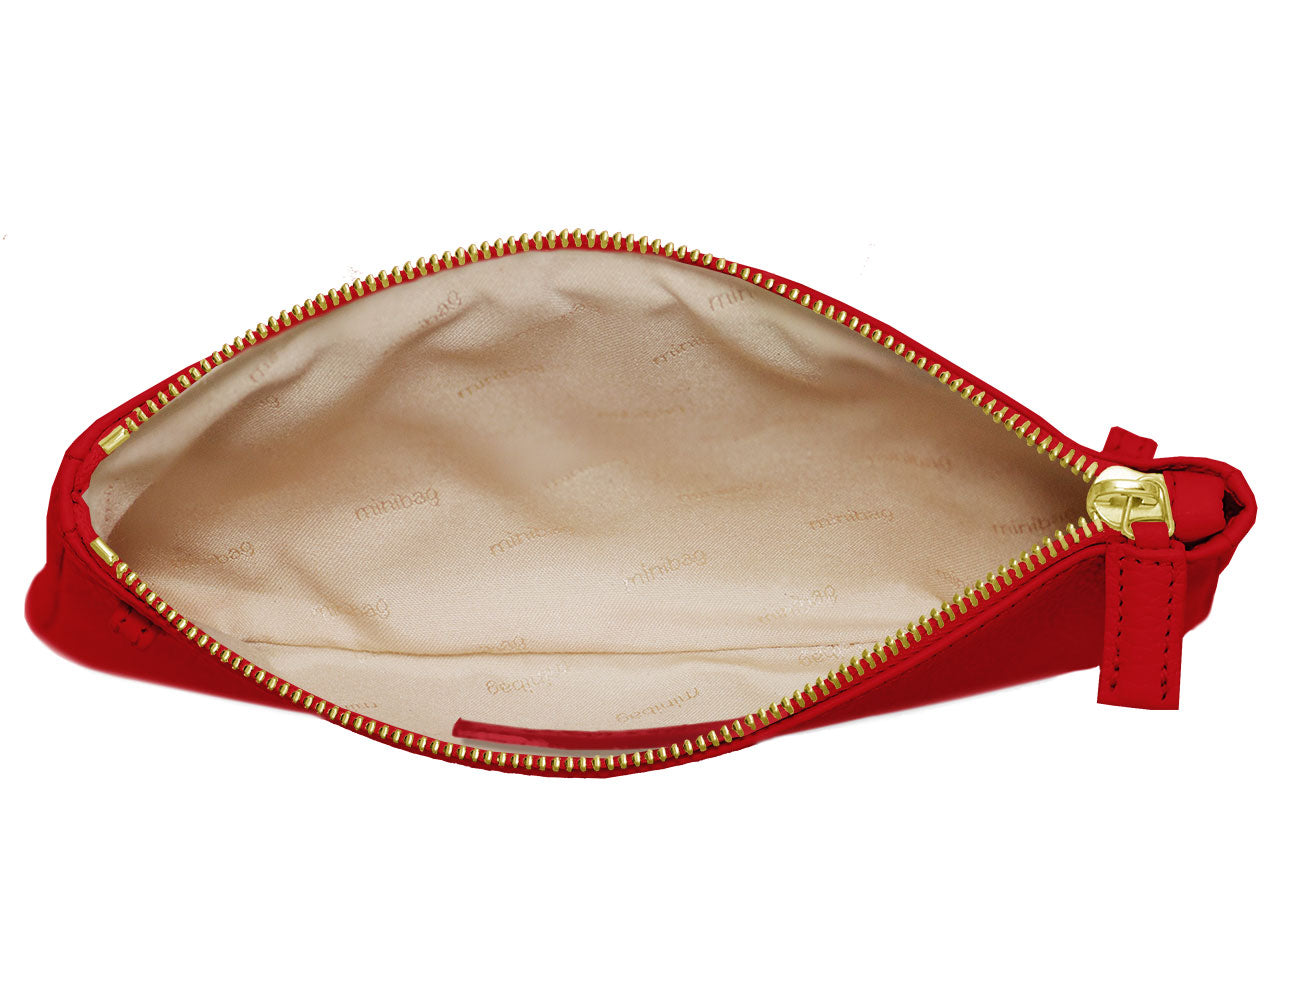 minibag red Edition GOLD, Ledertasche rot, Clutch rot, Innenleben minibag, goldene Details, minibag